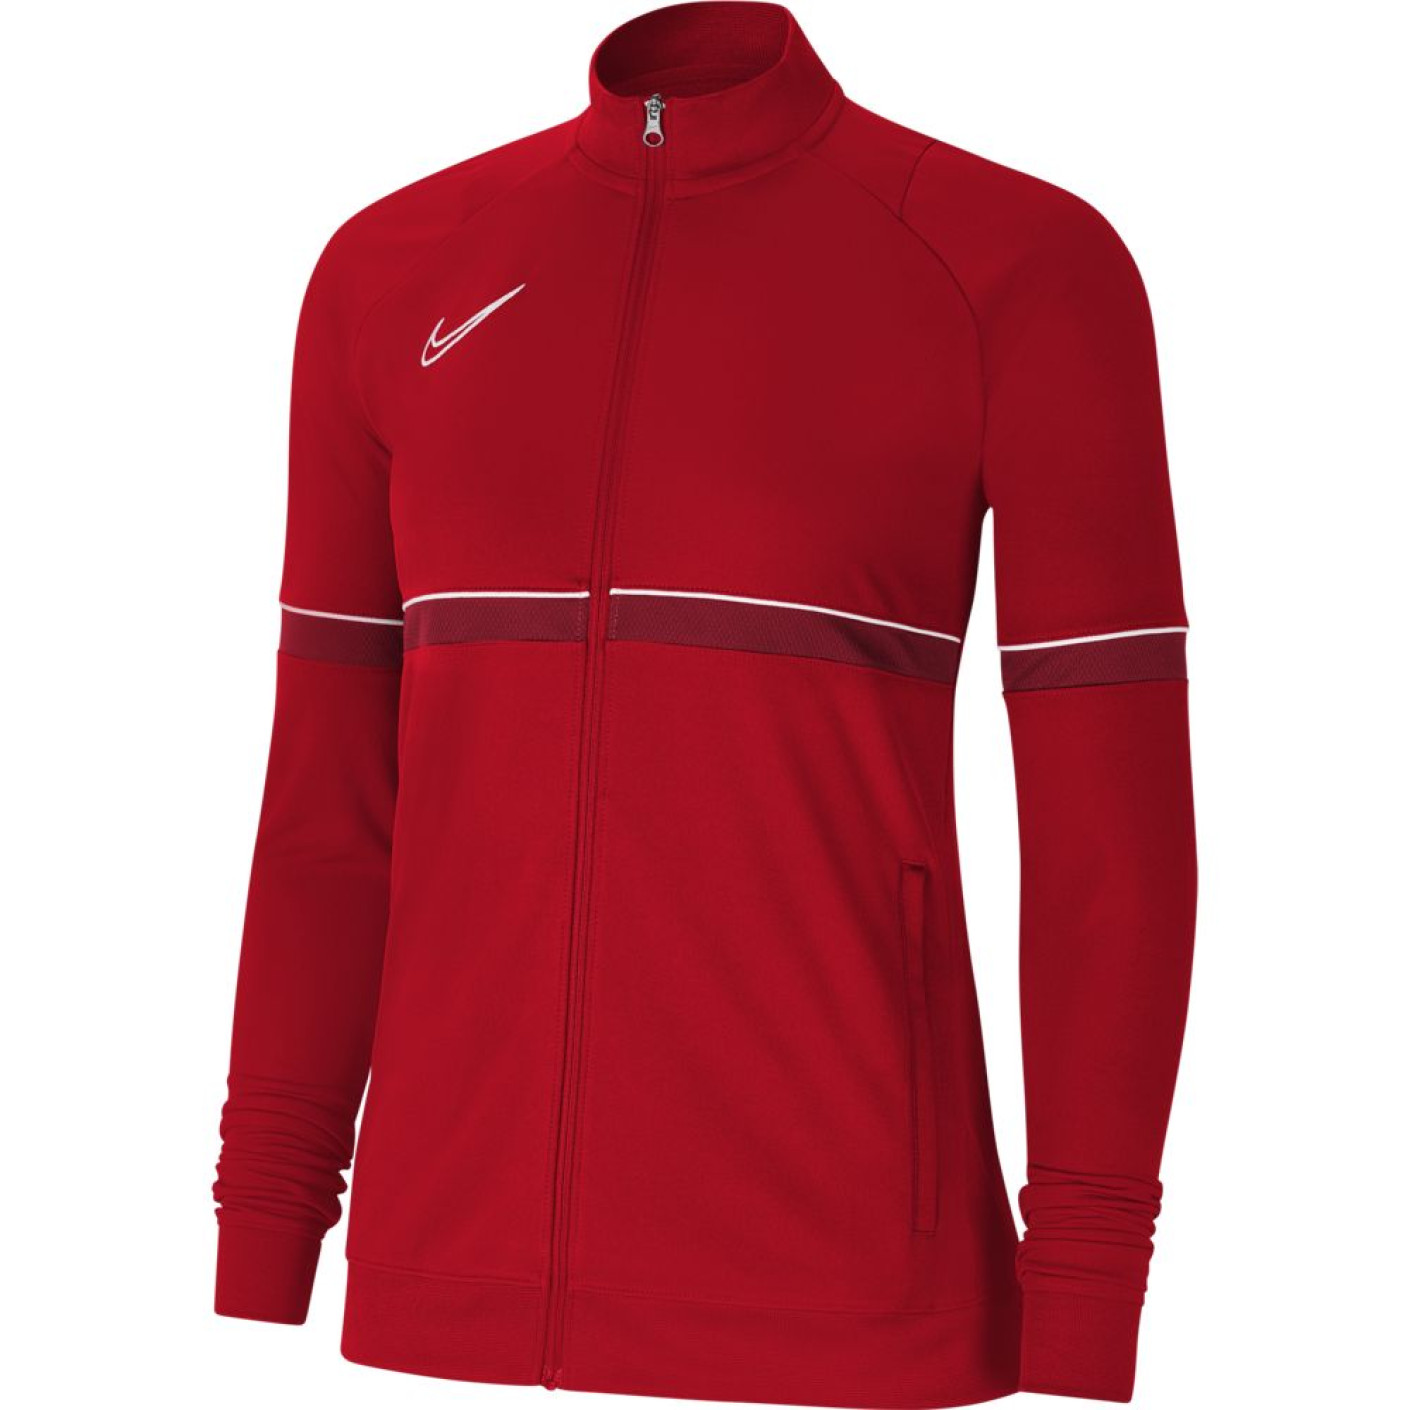 Veste d'entraînement Nike Dri-Fit Academy 21 pour femme, rouge